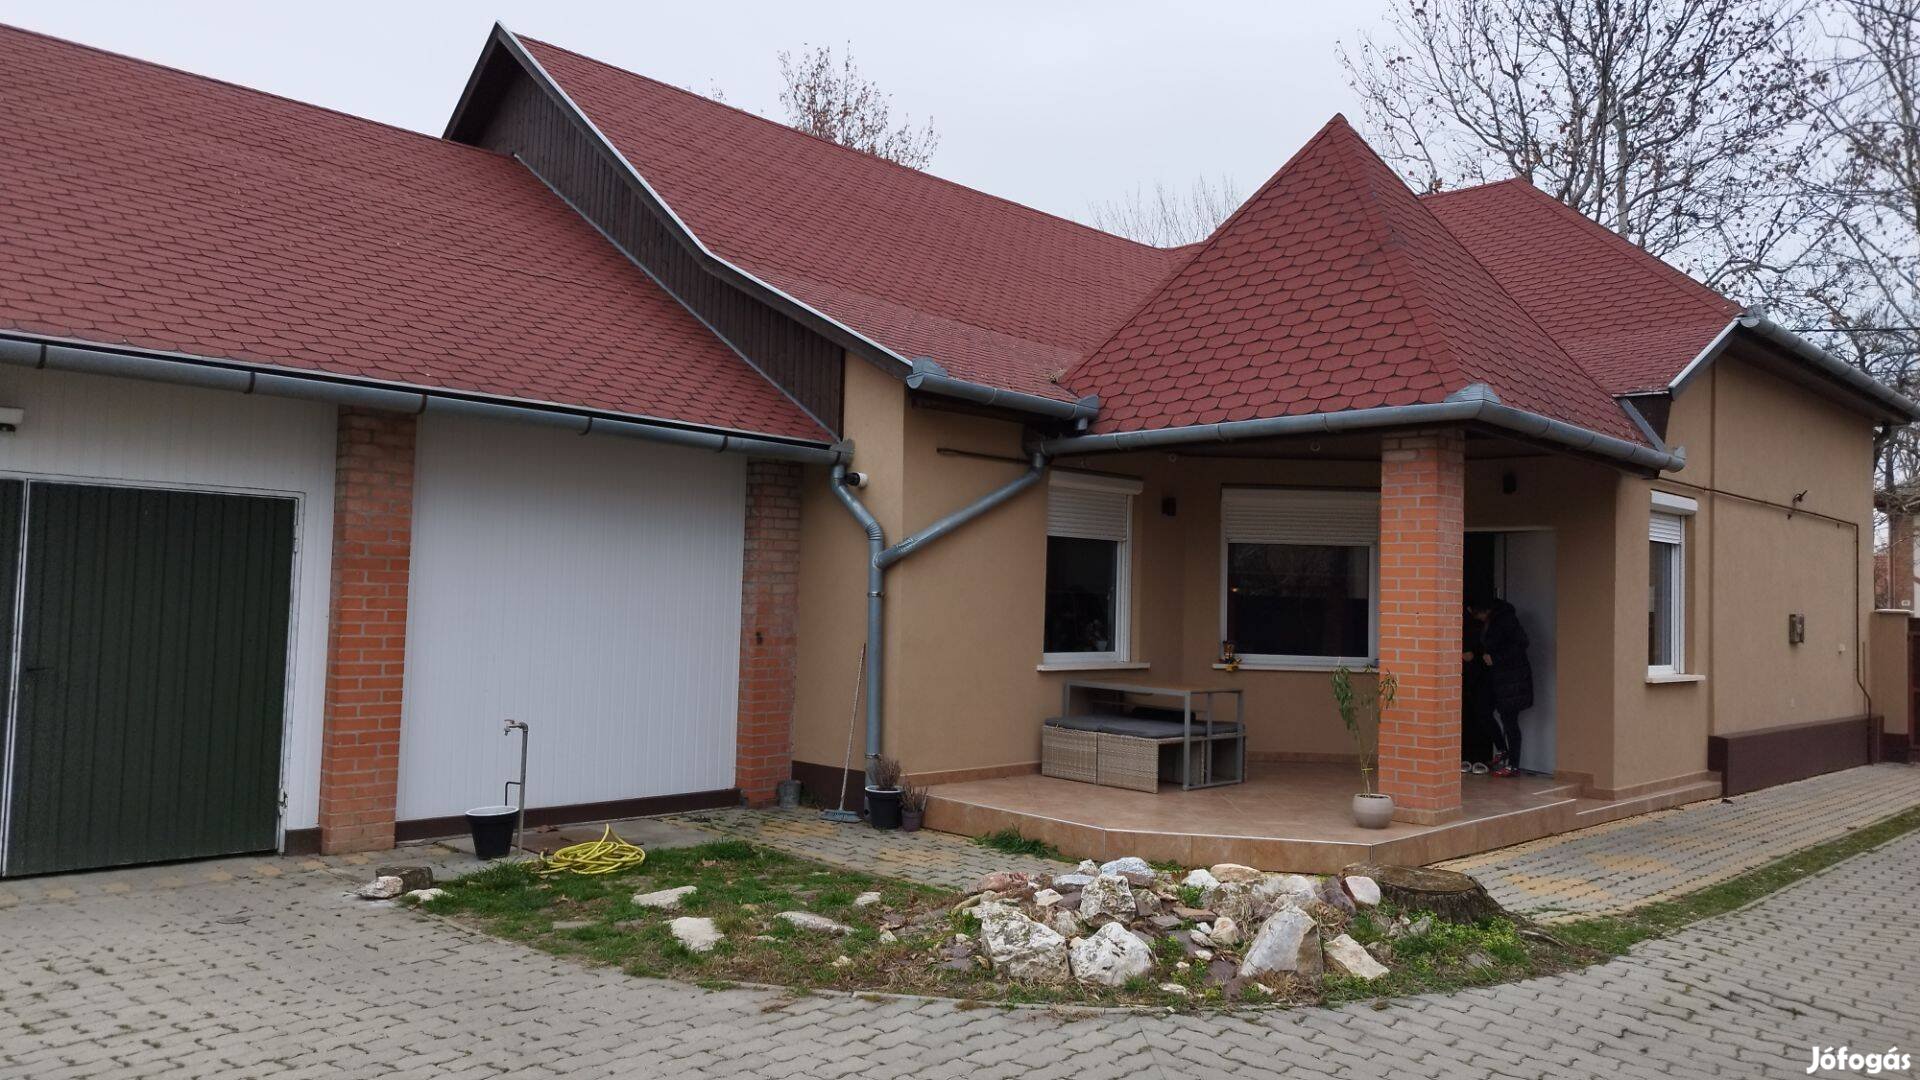 Jász-Nagykun-Szolnok vármegye, Mezőtúr városközpontban felújított ház